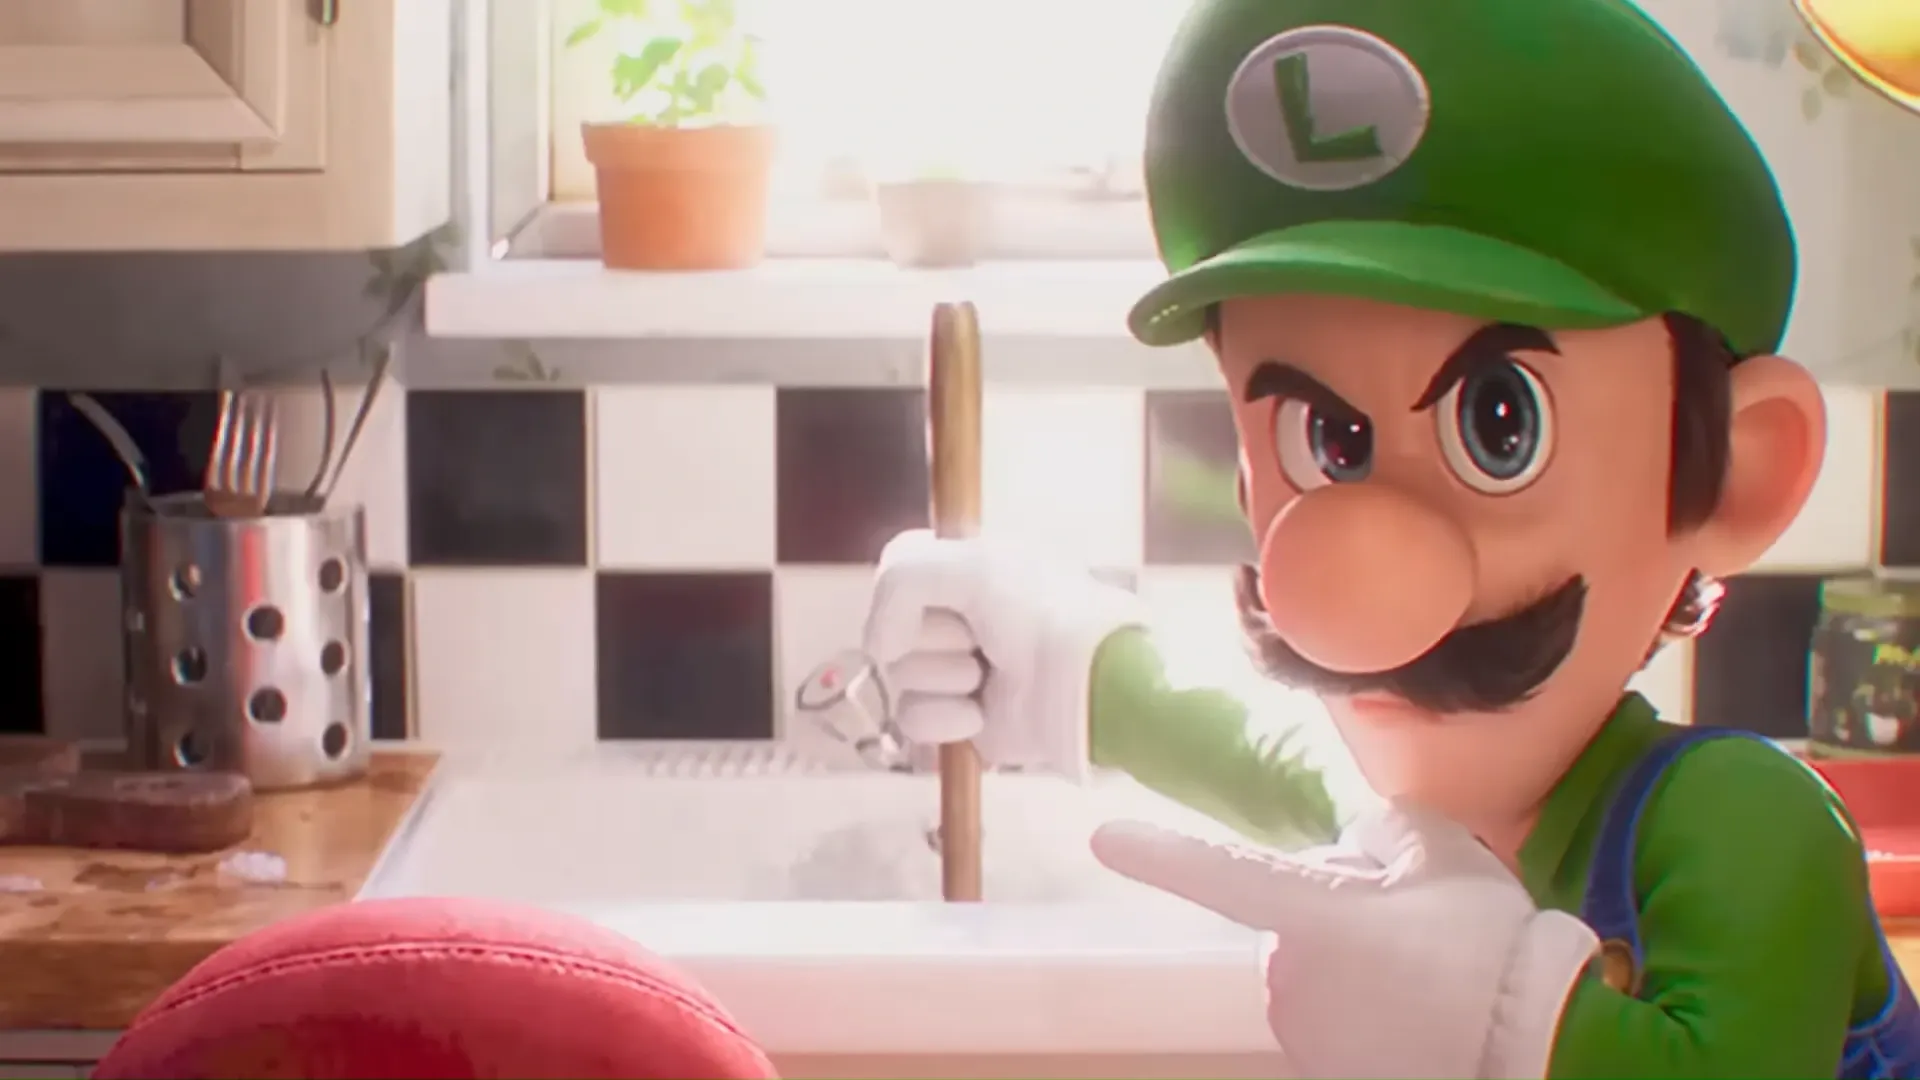 Conheça as curiosidades e polêmicas sobre o personagem Mario